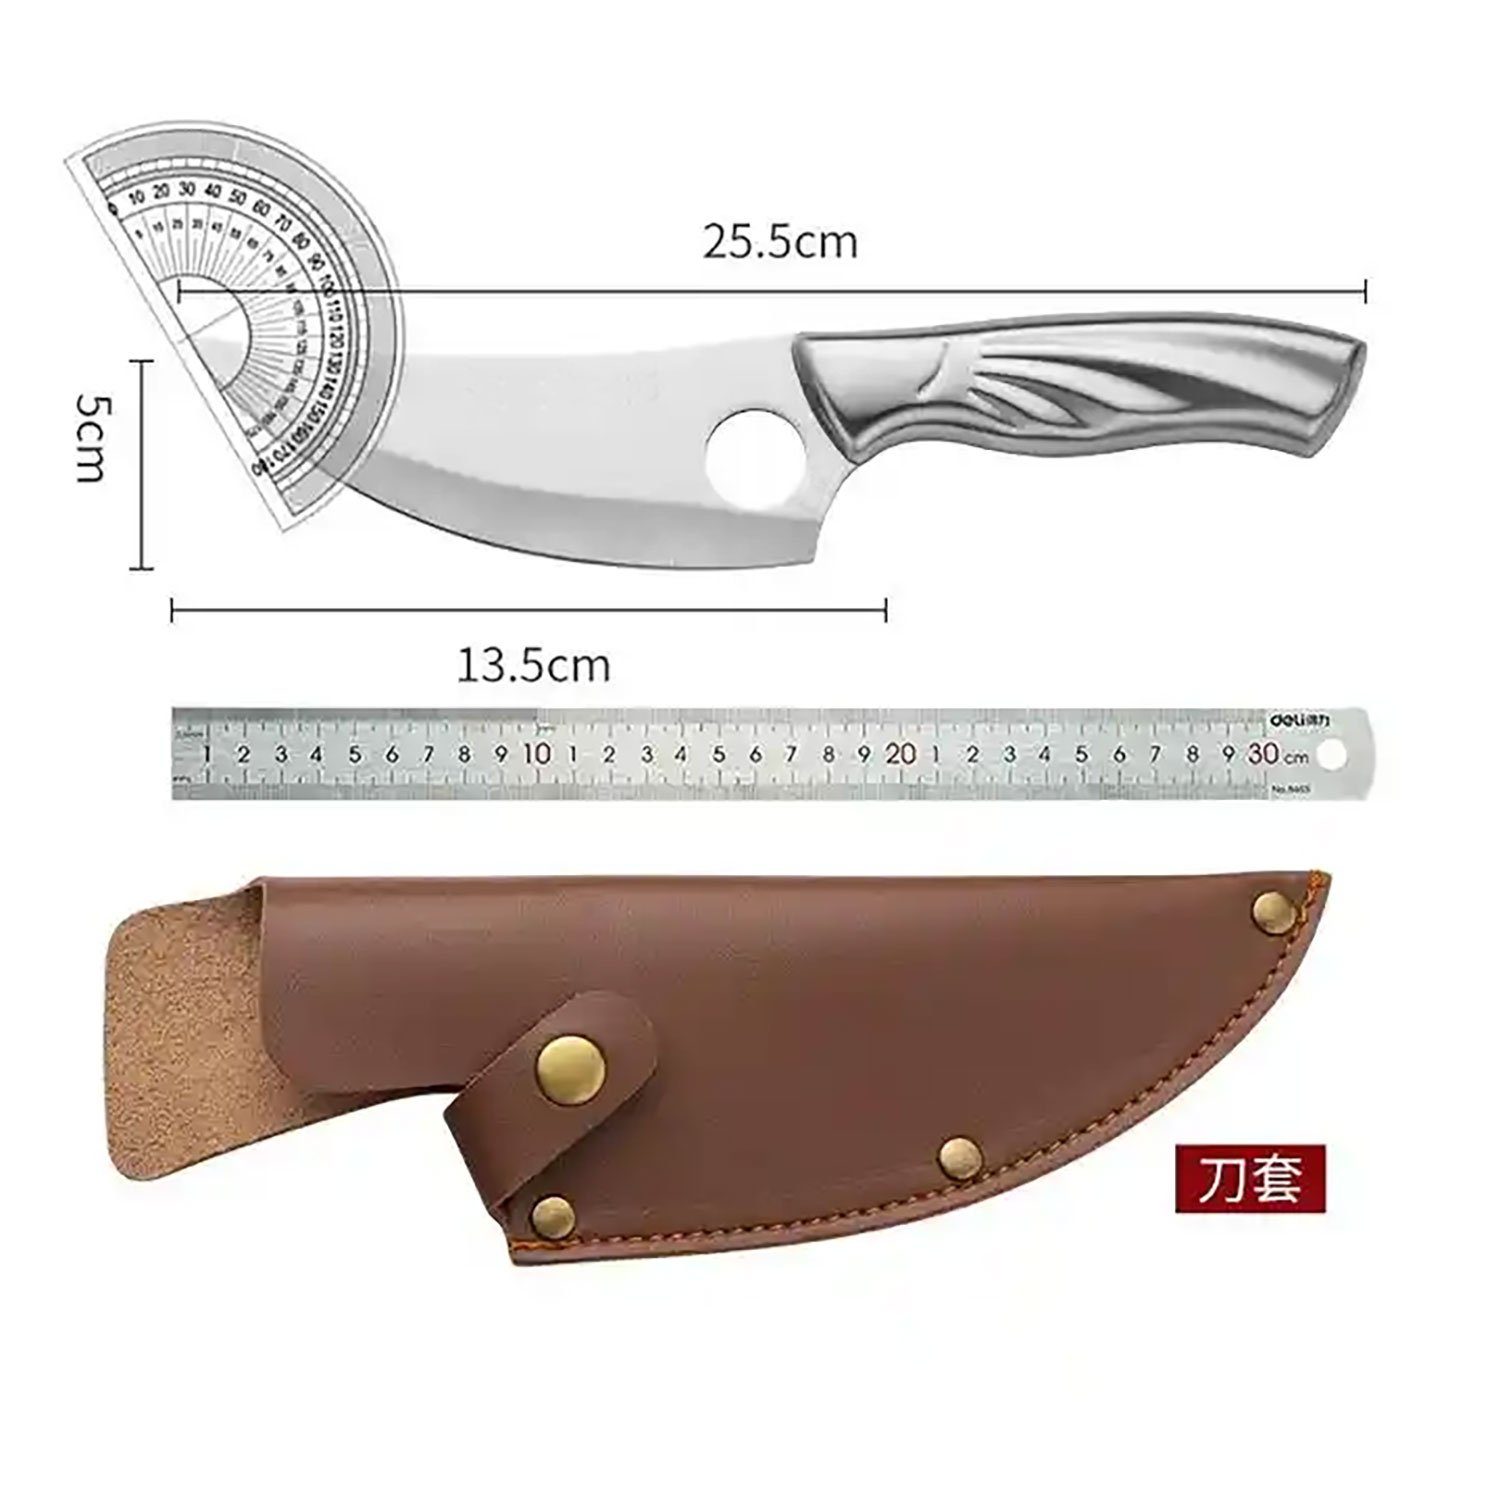 Muxel Hackmesser handlich scharf, und Multifunktionales Outdoormesser Küchenmesser Kompakt, 